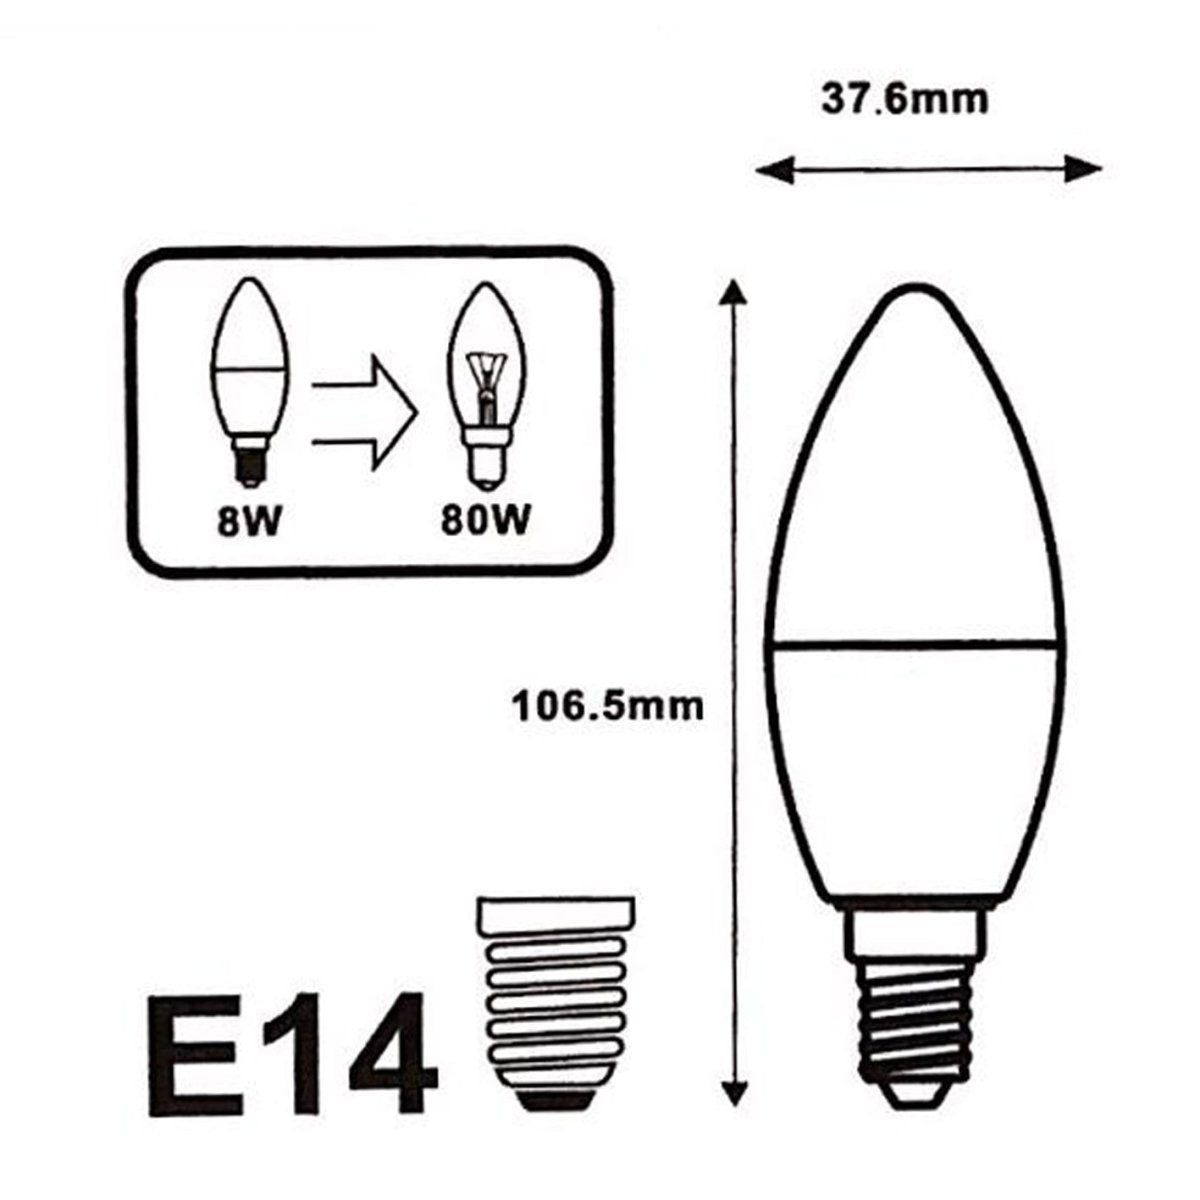 Ampoule LED E14 8W 220V C37 180° (Pack de 5) - Silamp France